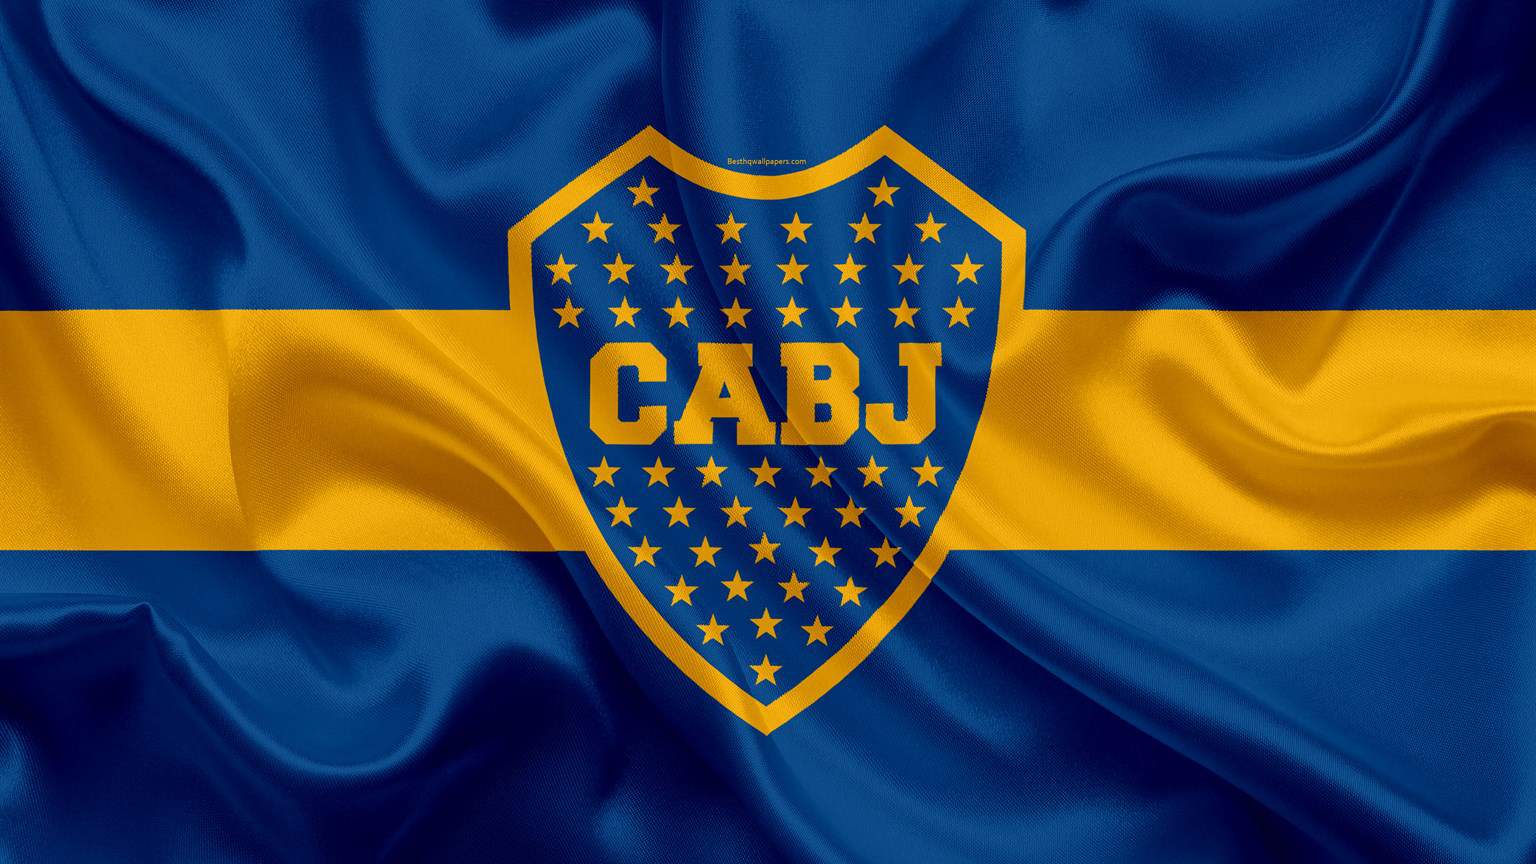 Boca-Juniors